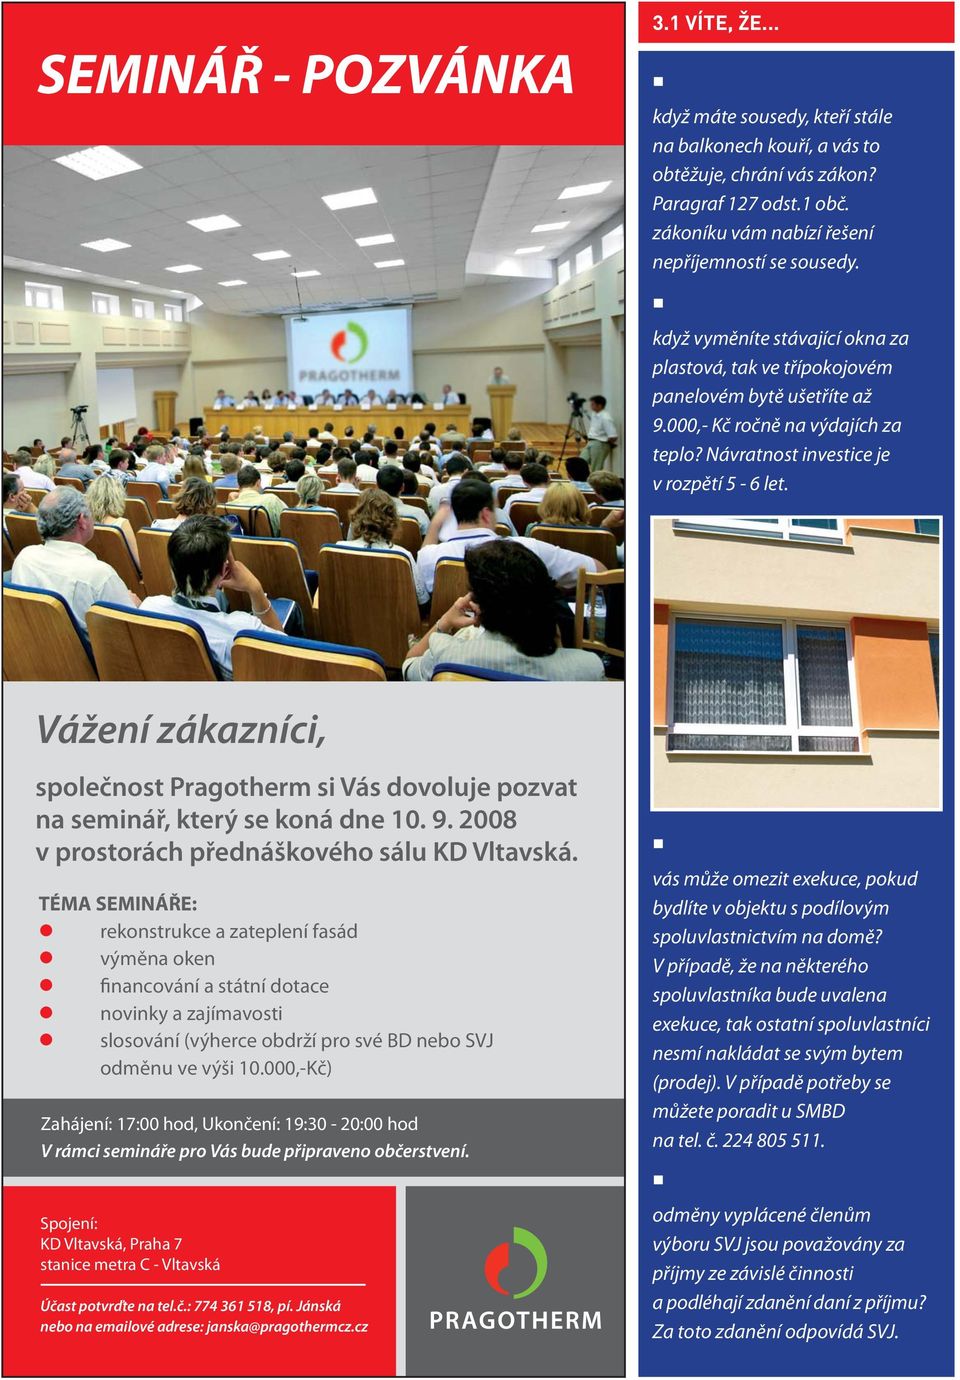 Vážení zákazníci, společnost Pragotherm si Vás dovoluje pozvat na seminář, který se koná dne 10. 9. 2008 v prostorách přednáškového sálu KD Vltavská.